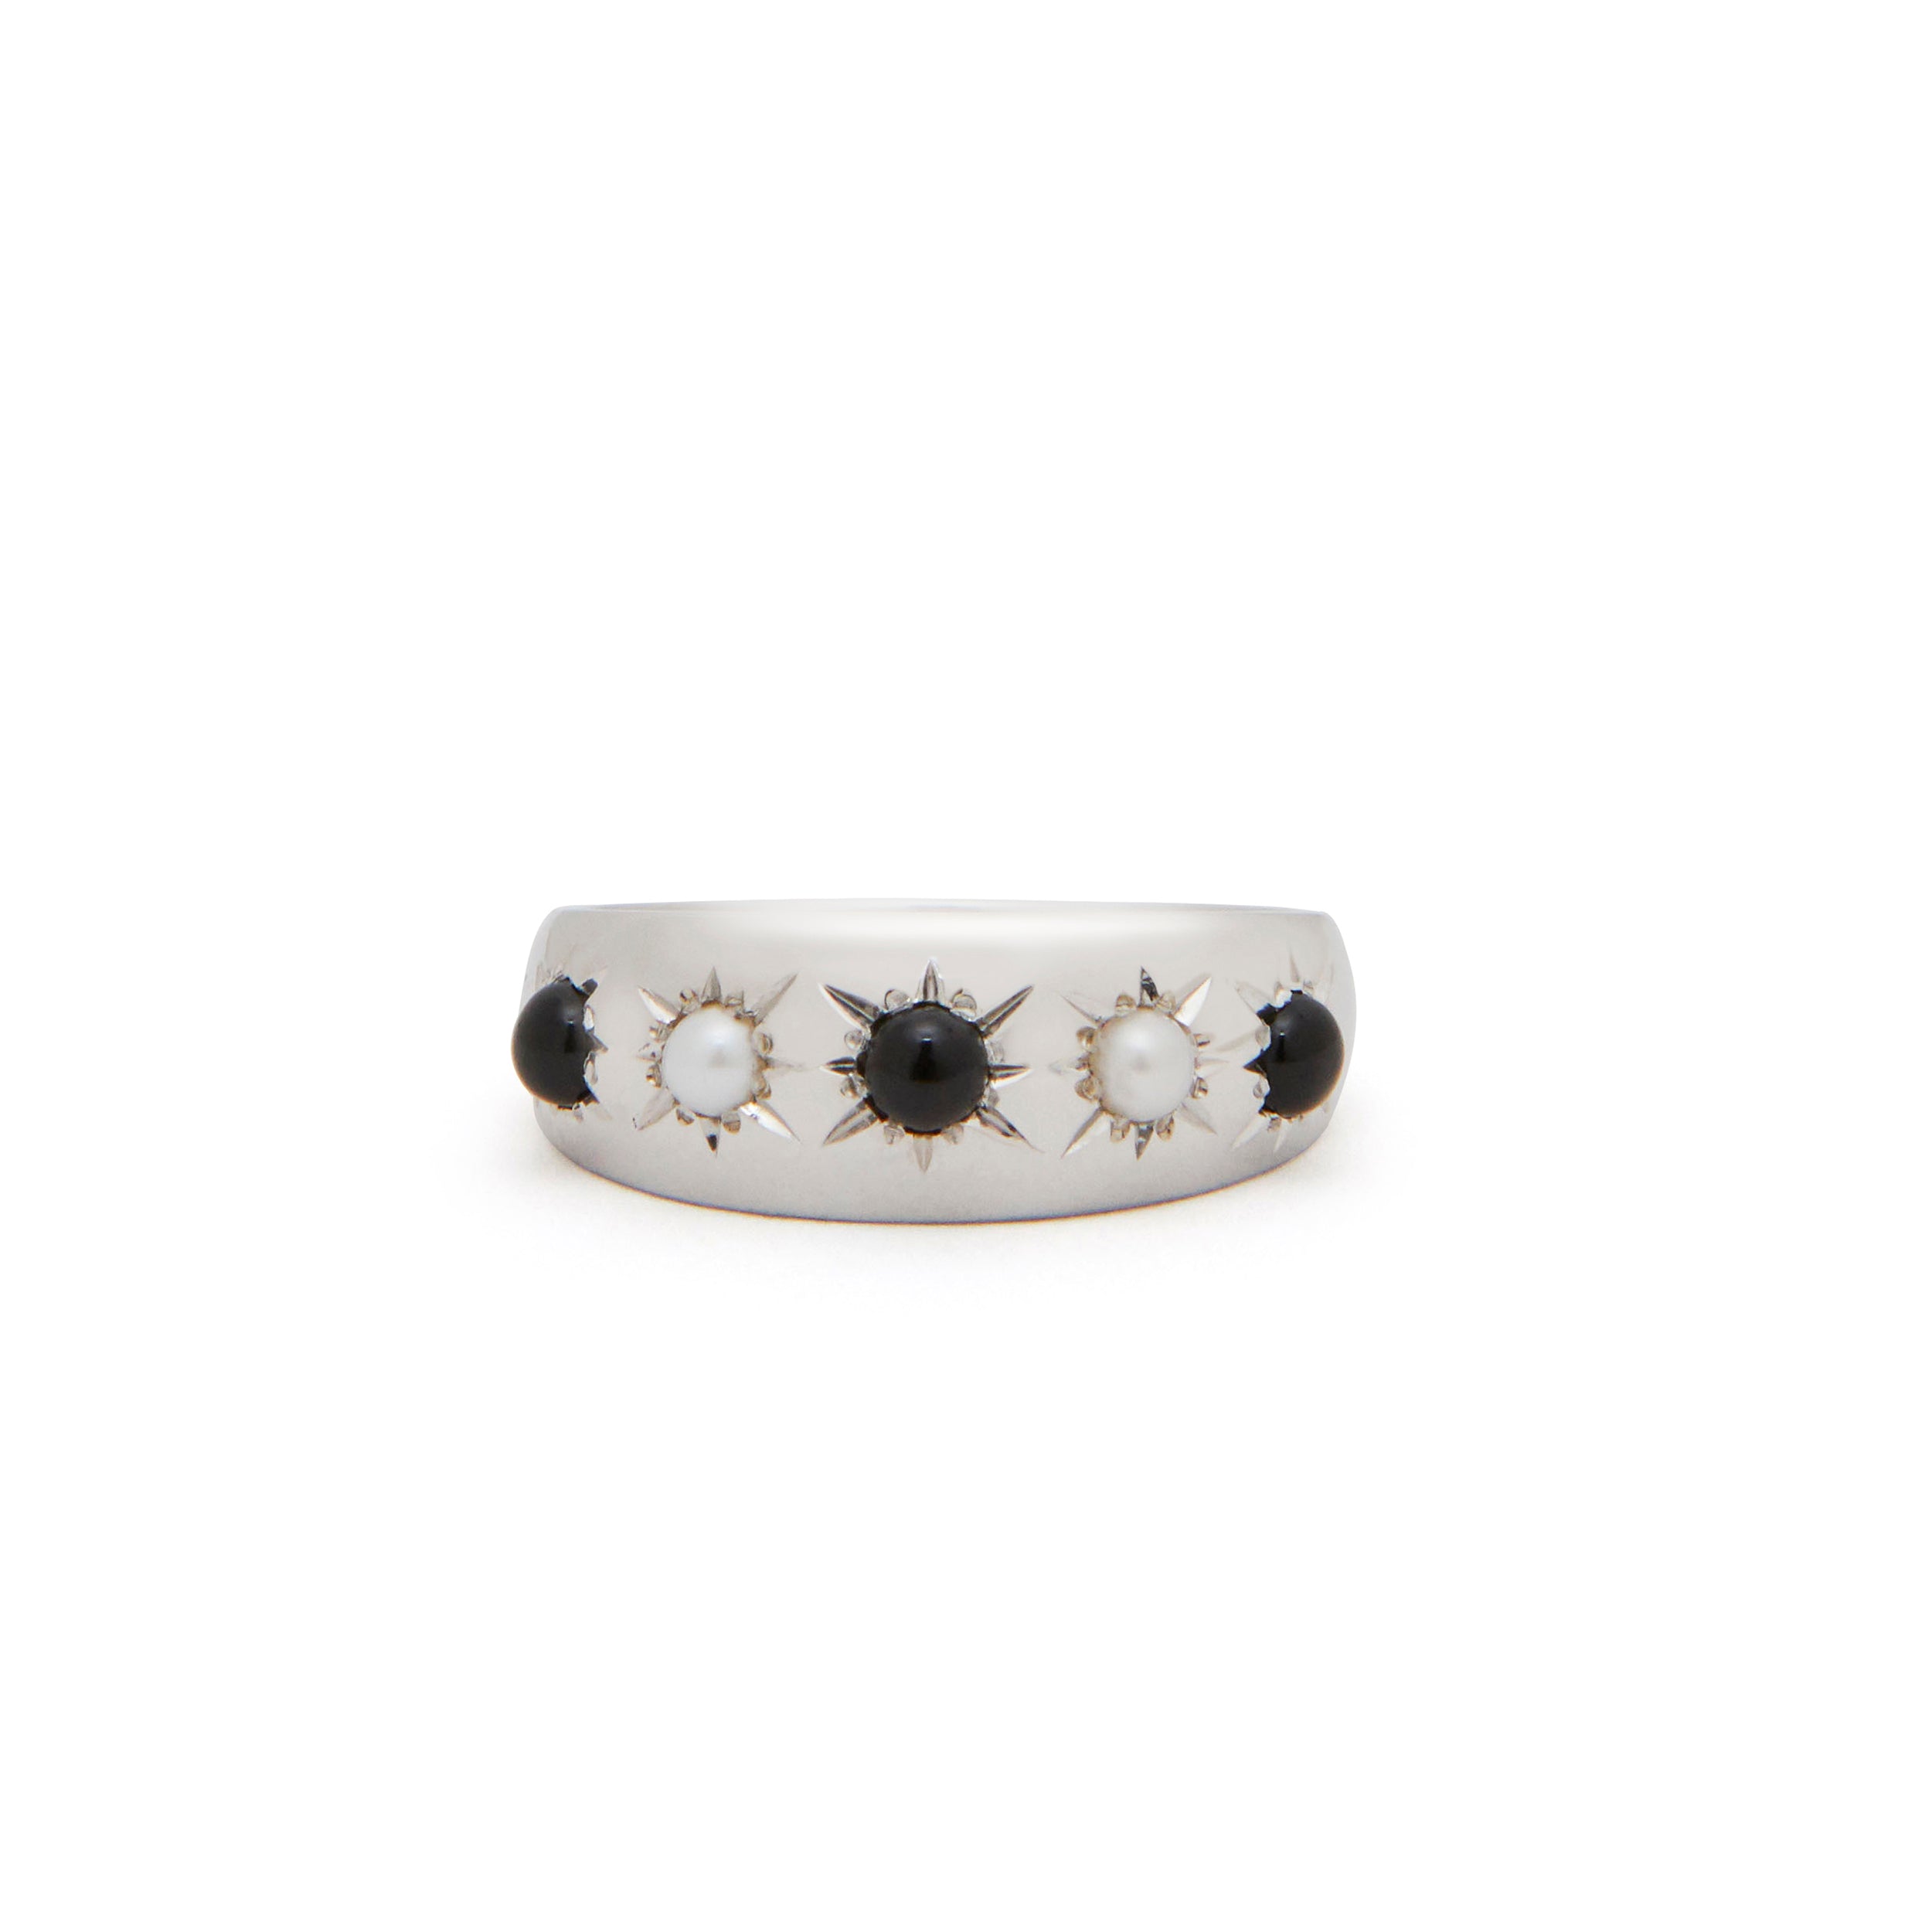 The F&B Custom 5-Starburst Ring